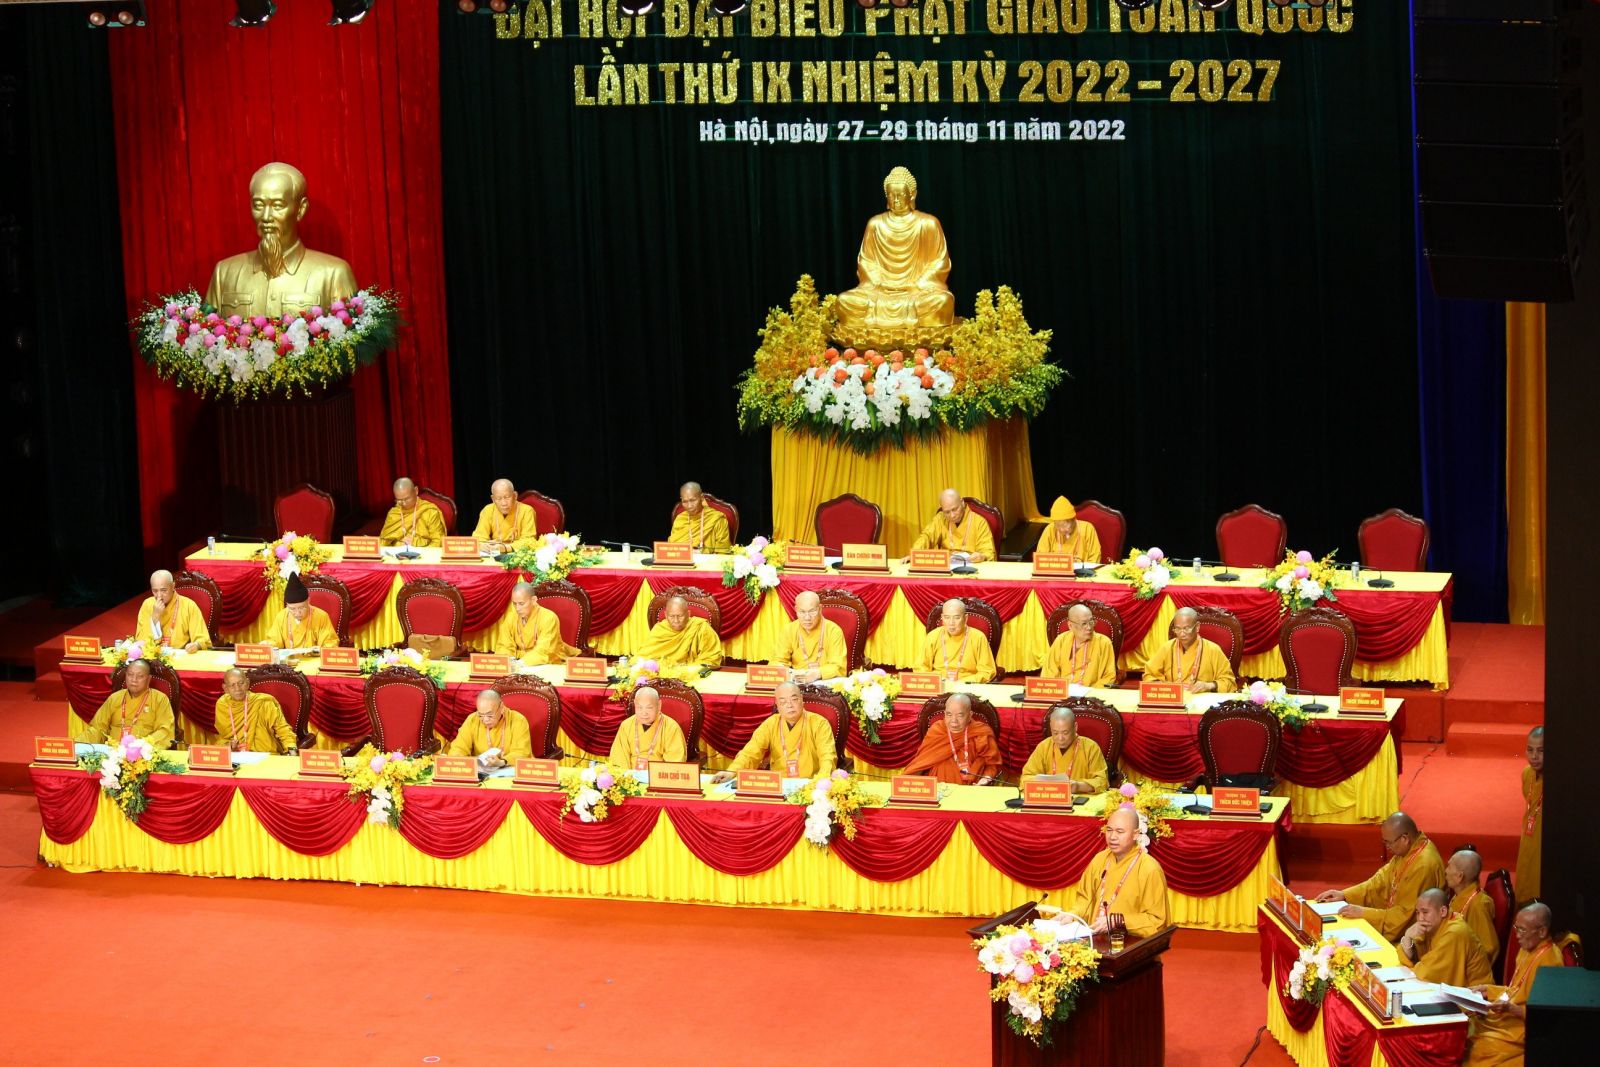 Hơn 1000 Đại biểu hân hoan lễ khai mạc Đại hội Đại biểu Phật giáo toàn quốc lần thứ IX nhiệm kỳ 2022 - 2027